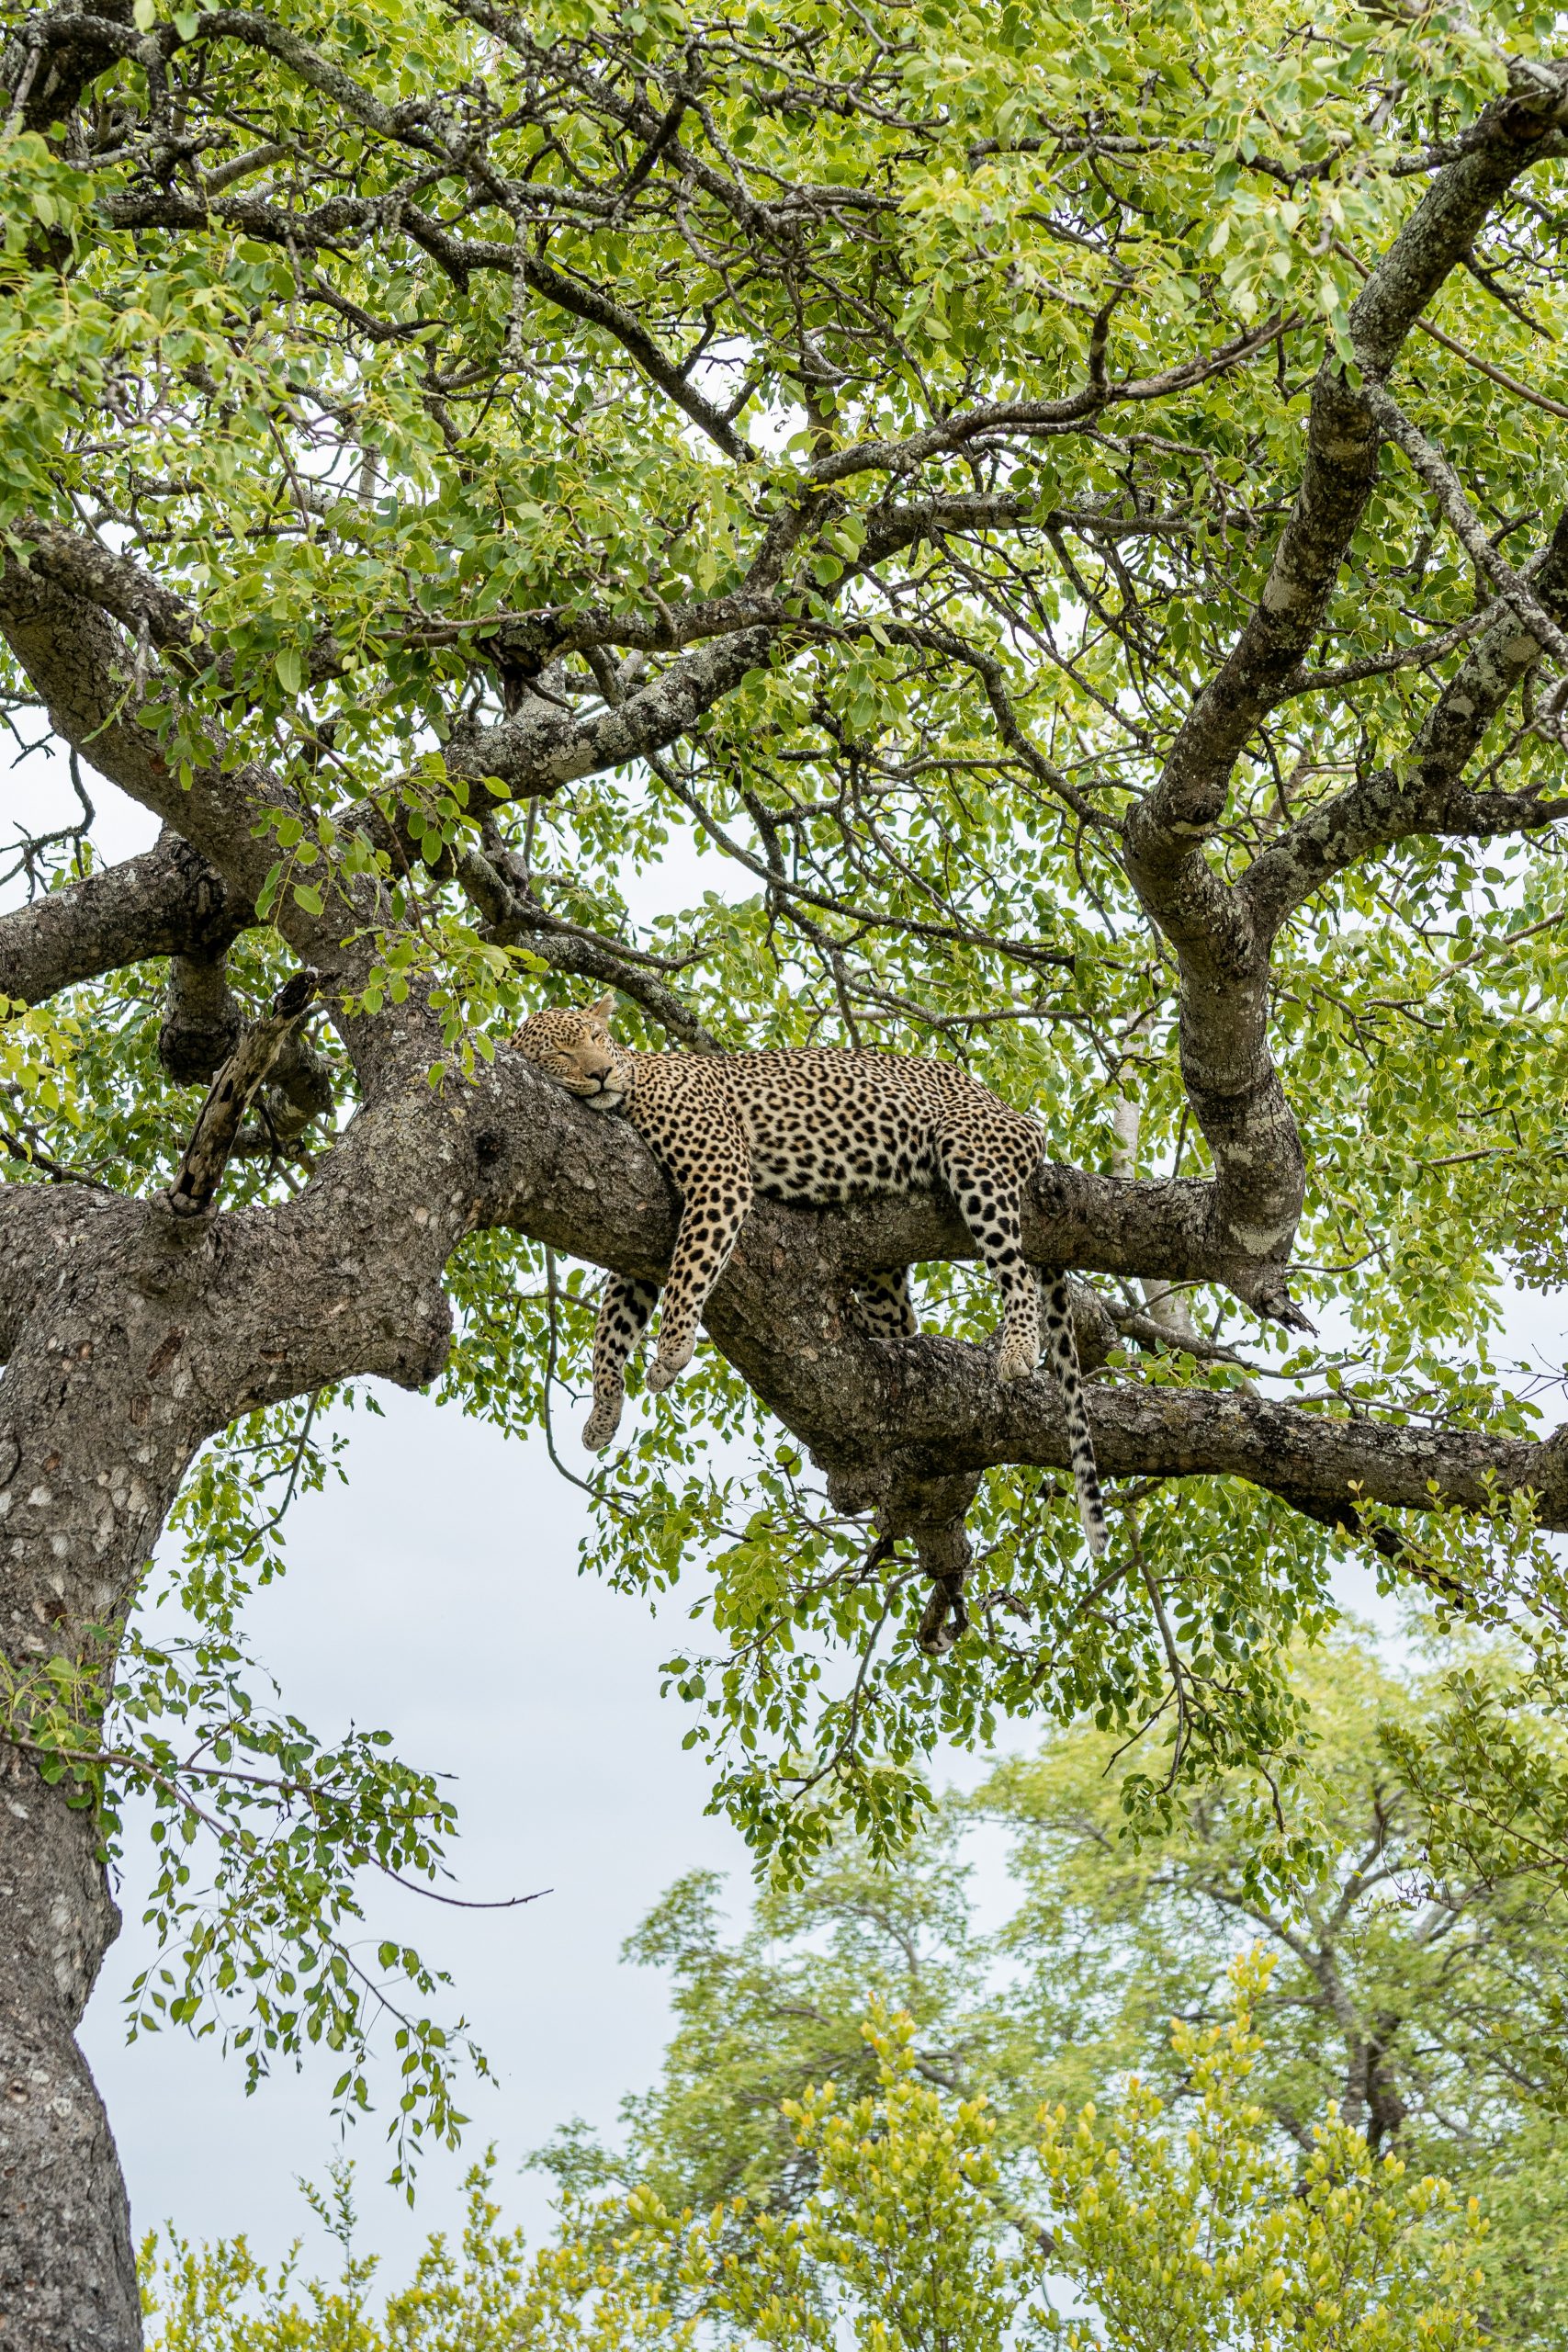 Sleeping leopard in the tree